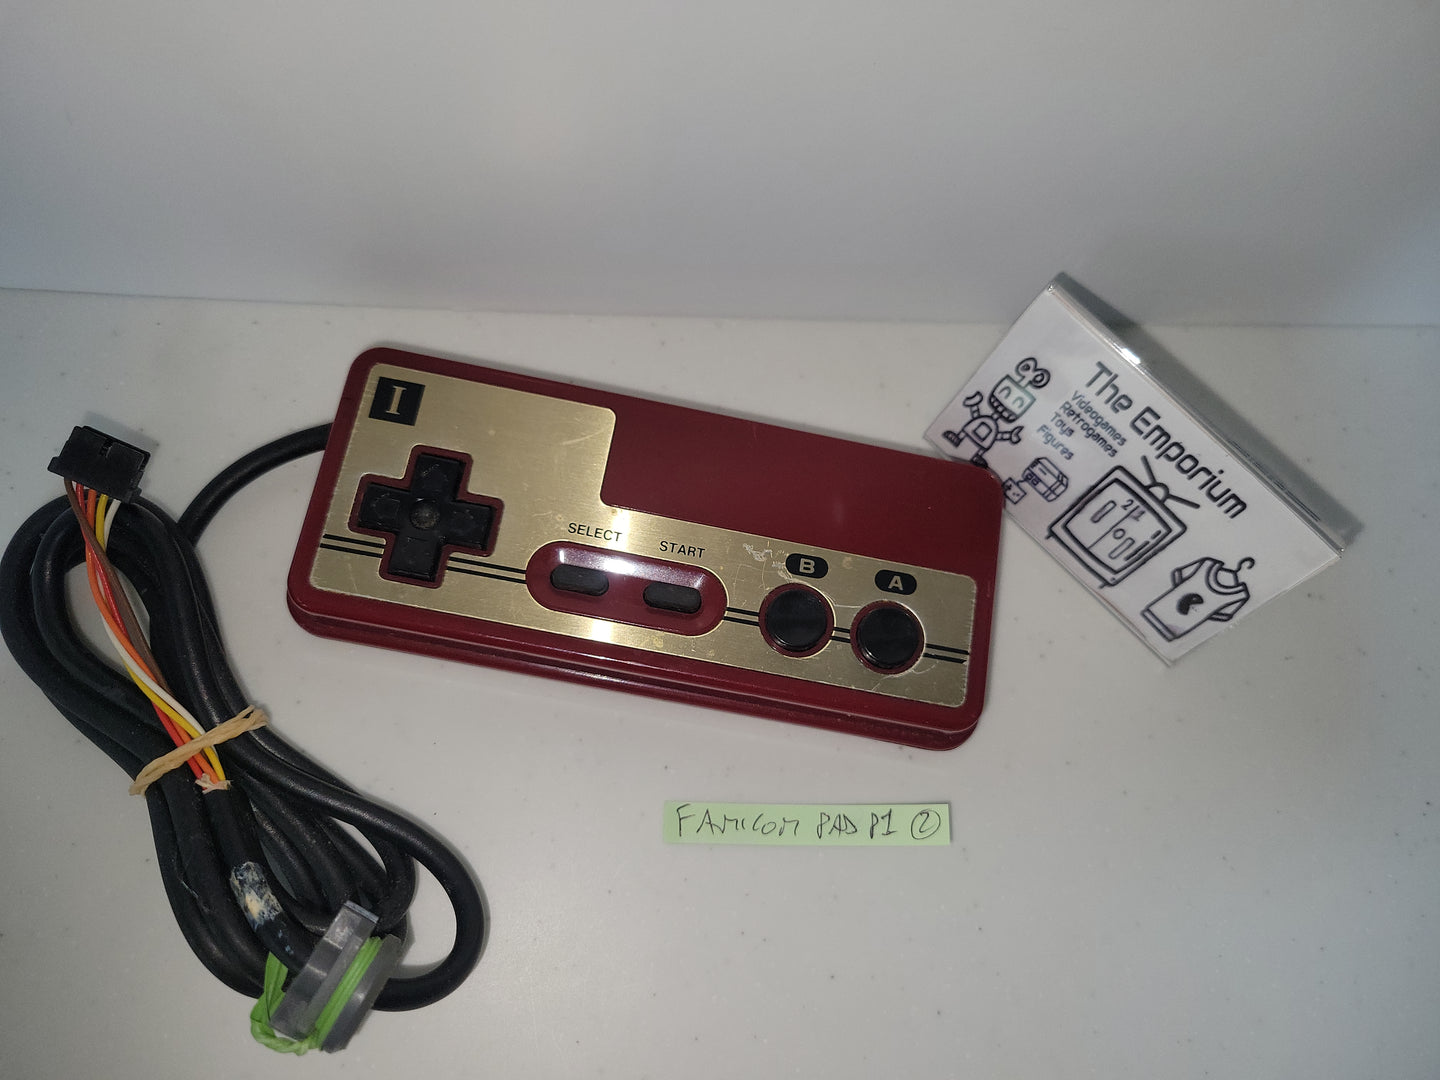 Famicom Control Pad Player1 - Nintendo Fc Famicom